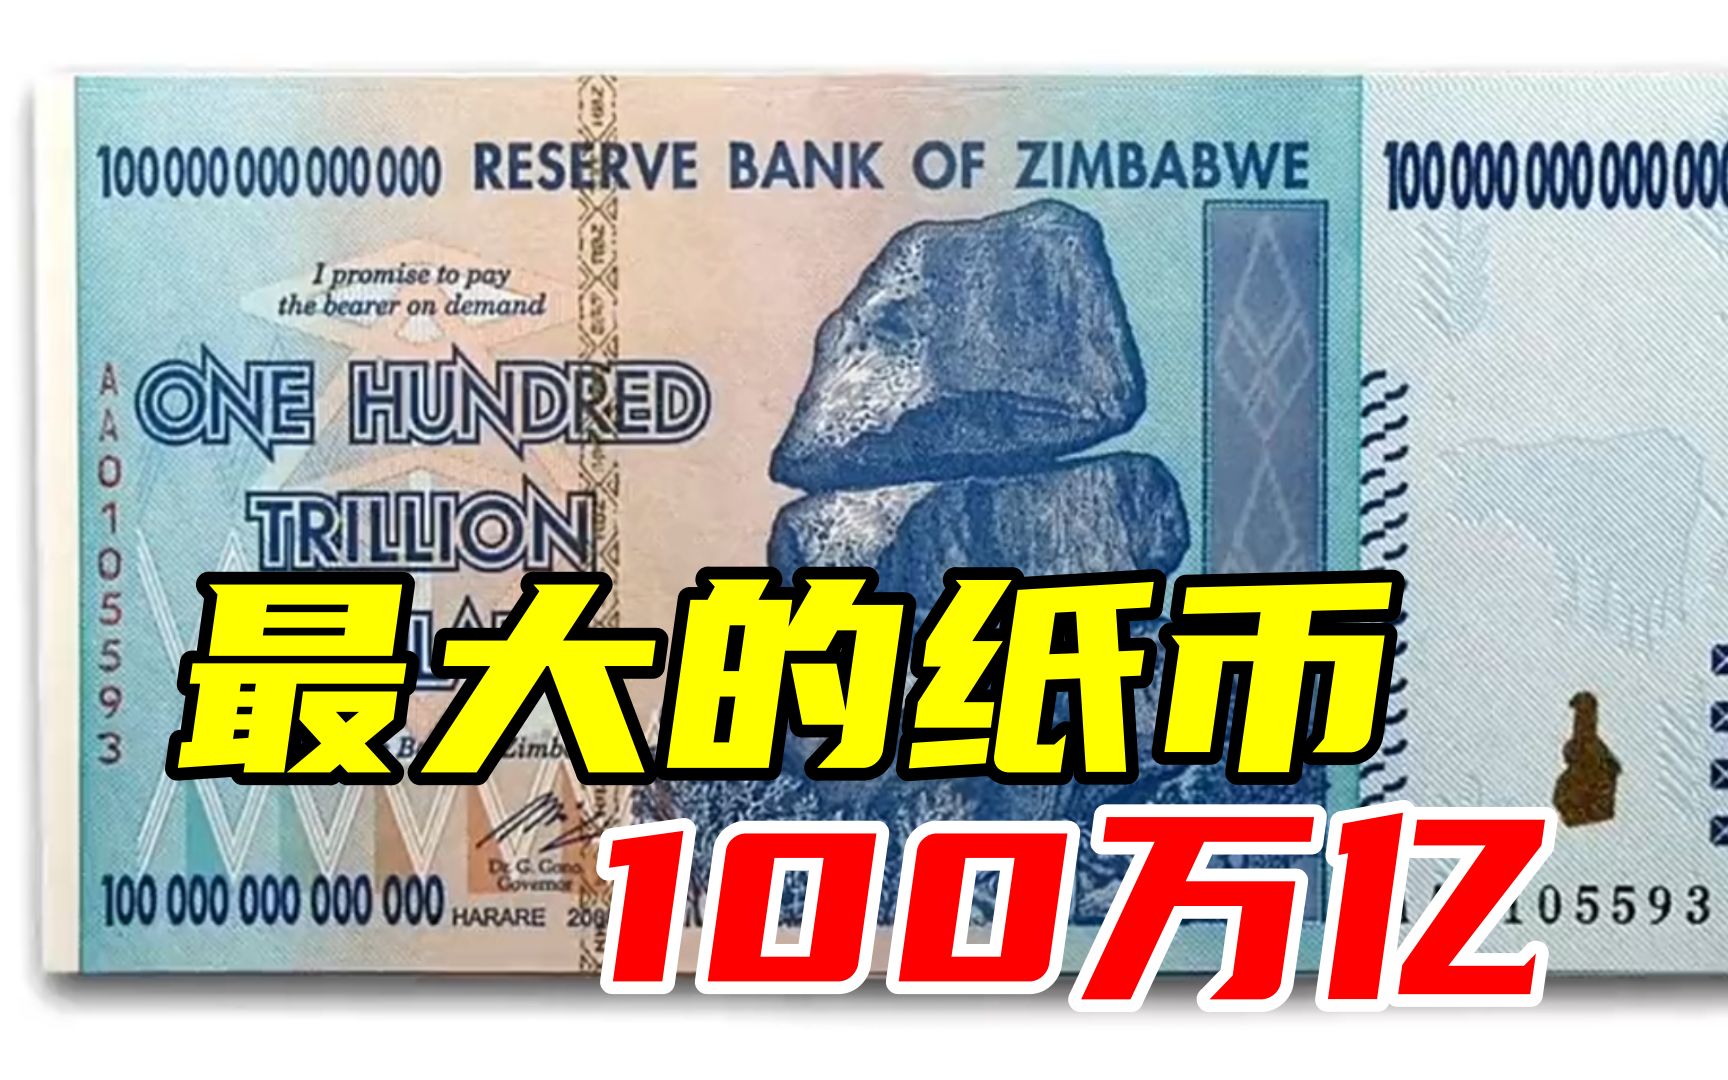 哪里买得起?100万亿津元纸币的津巴布韦是穷人的天堂还是地狱?